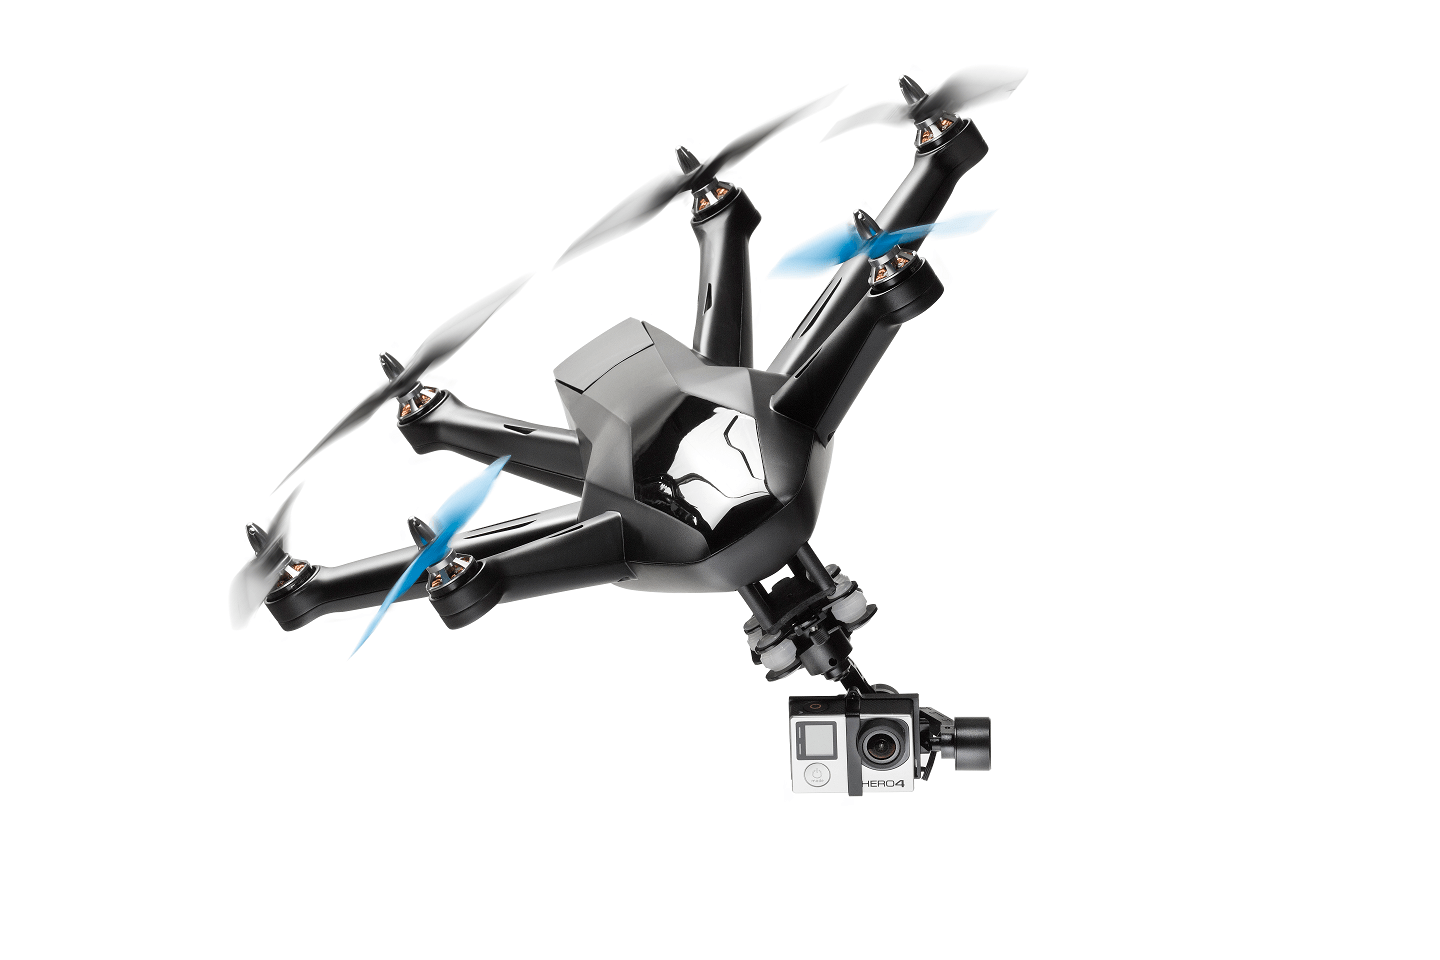 Hexo+: zelfstandig vliegende camera 25